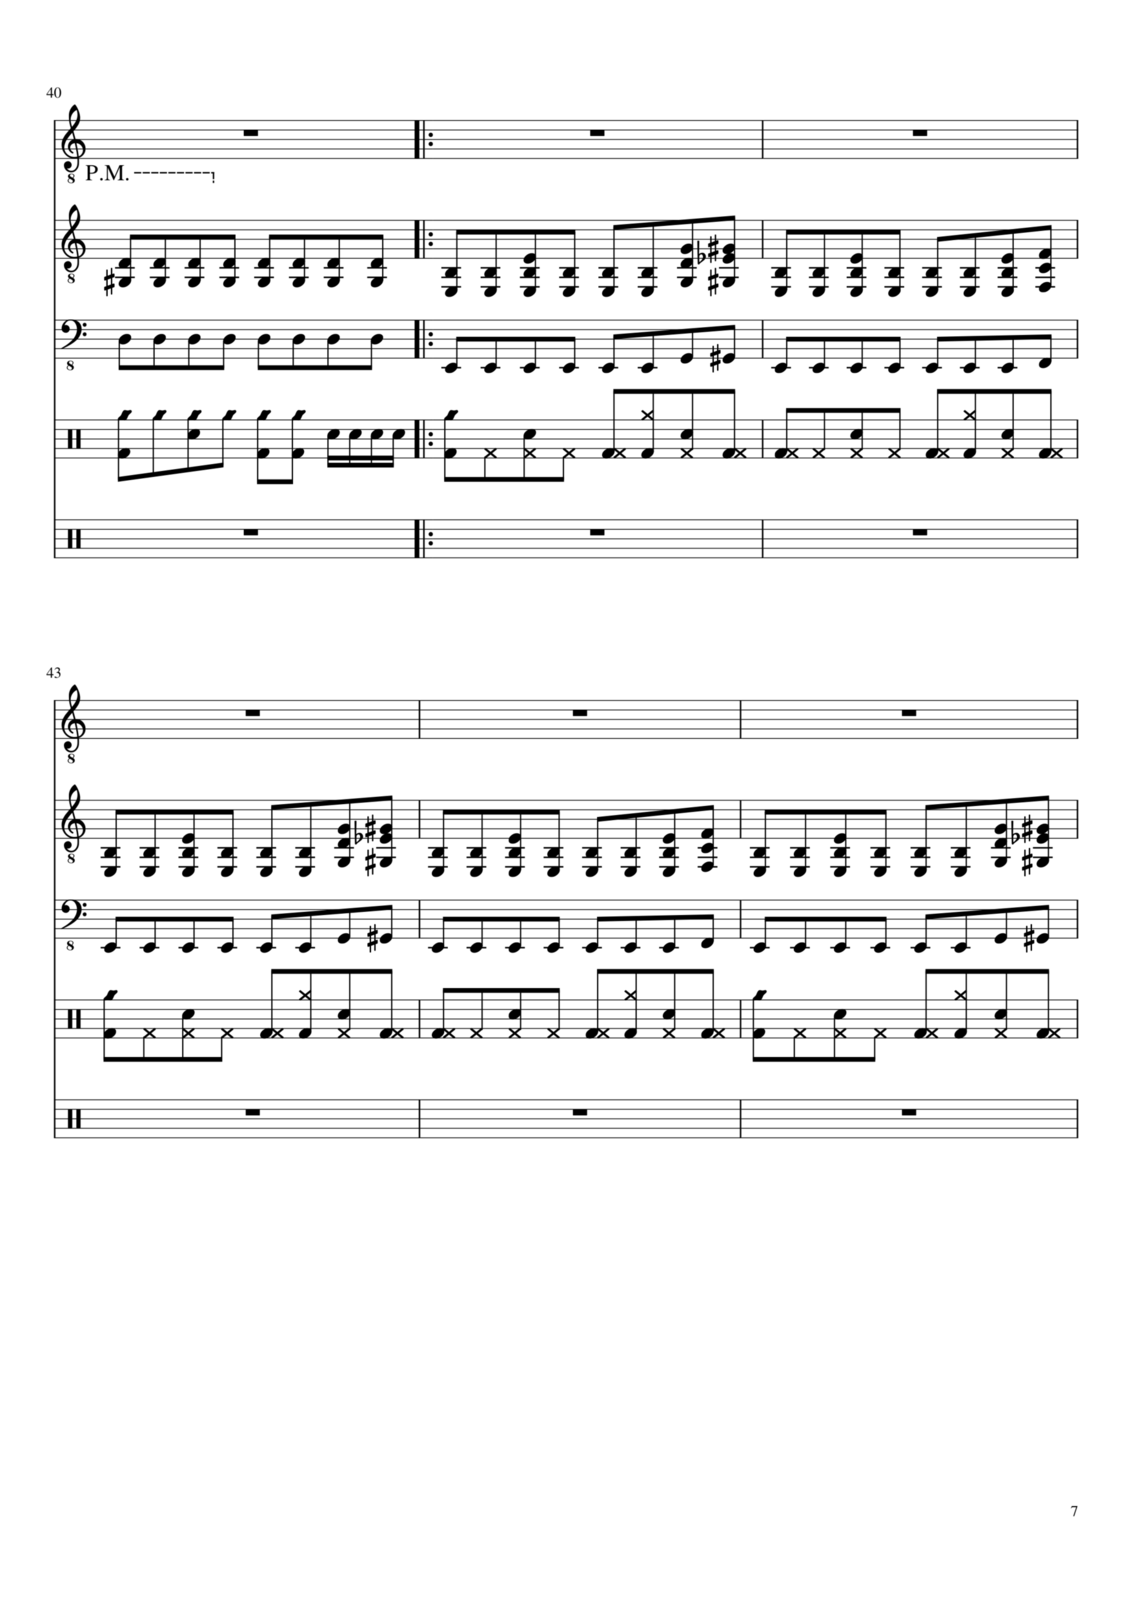 Zvezdnyiy vodoem slide, Image 4